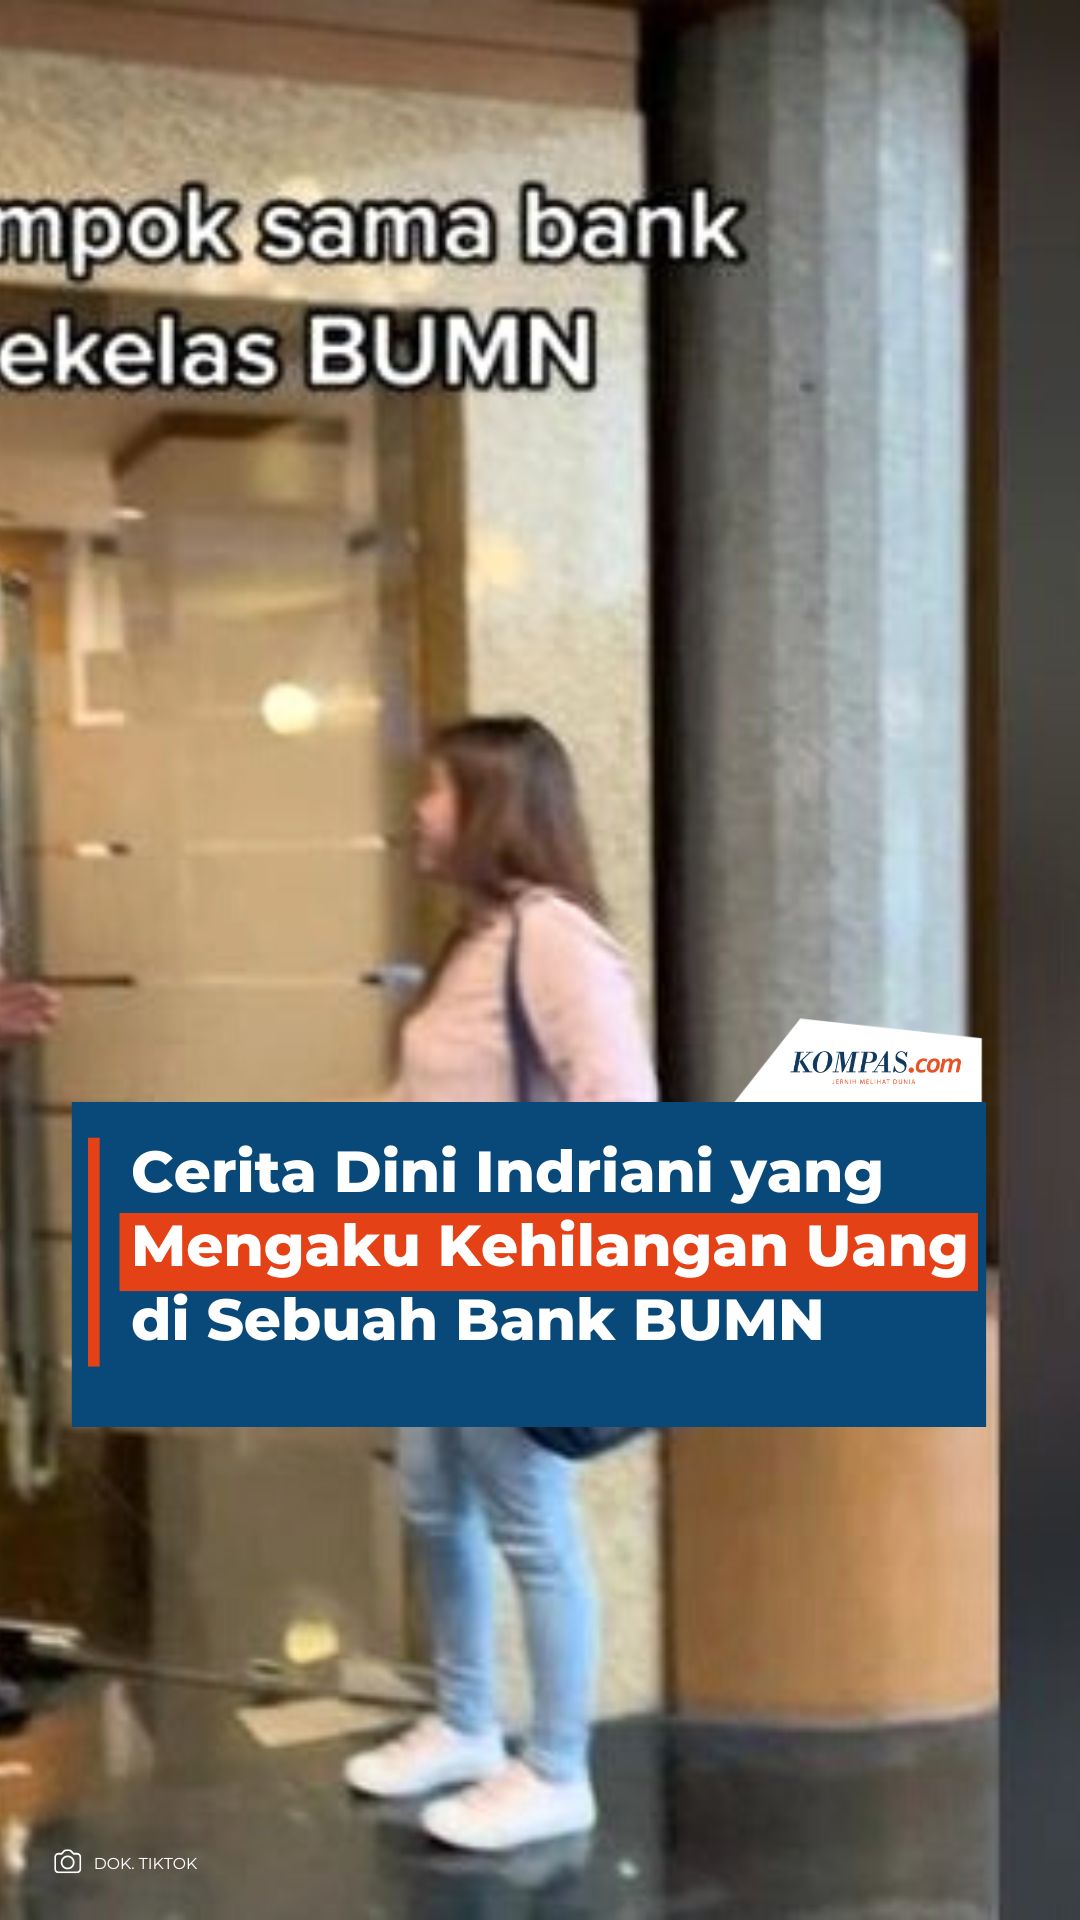 Cerita Dini Indriani yang Mengaku Kehilangan Uang di Sebuah Bank BUMN